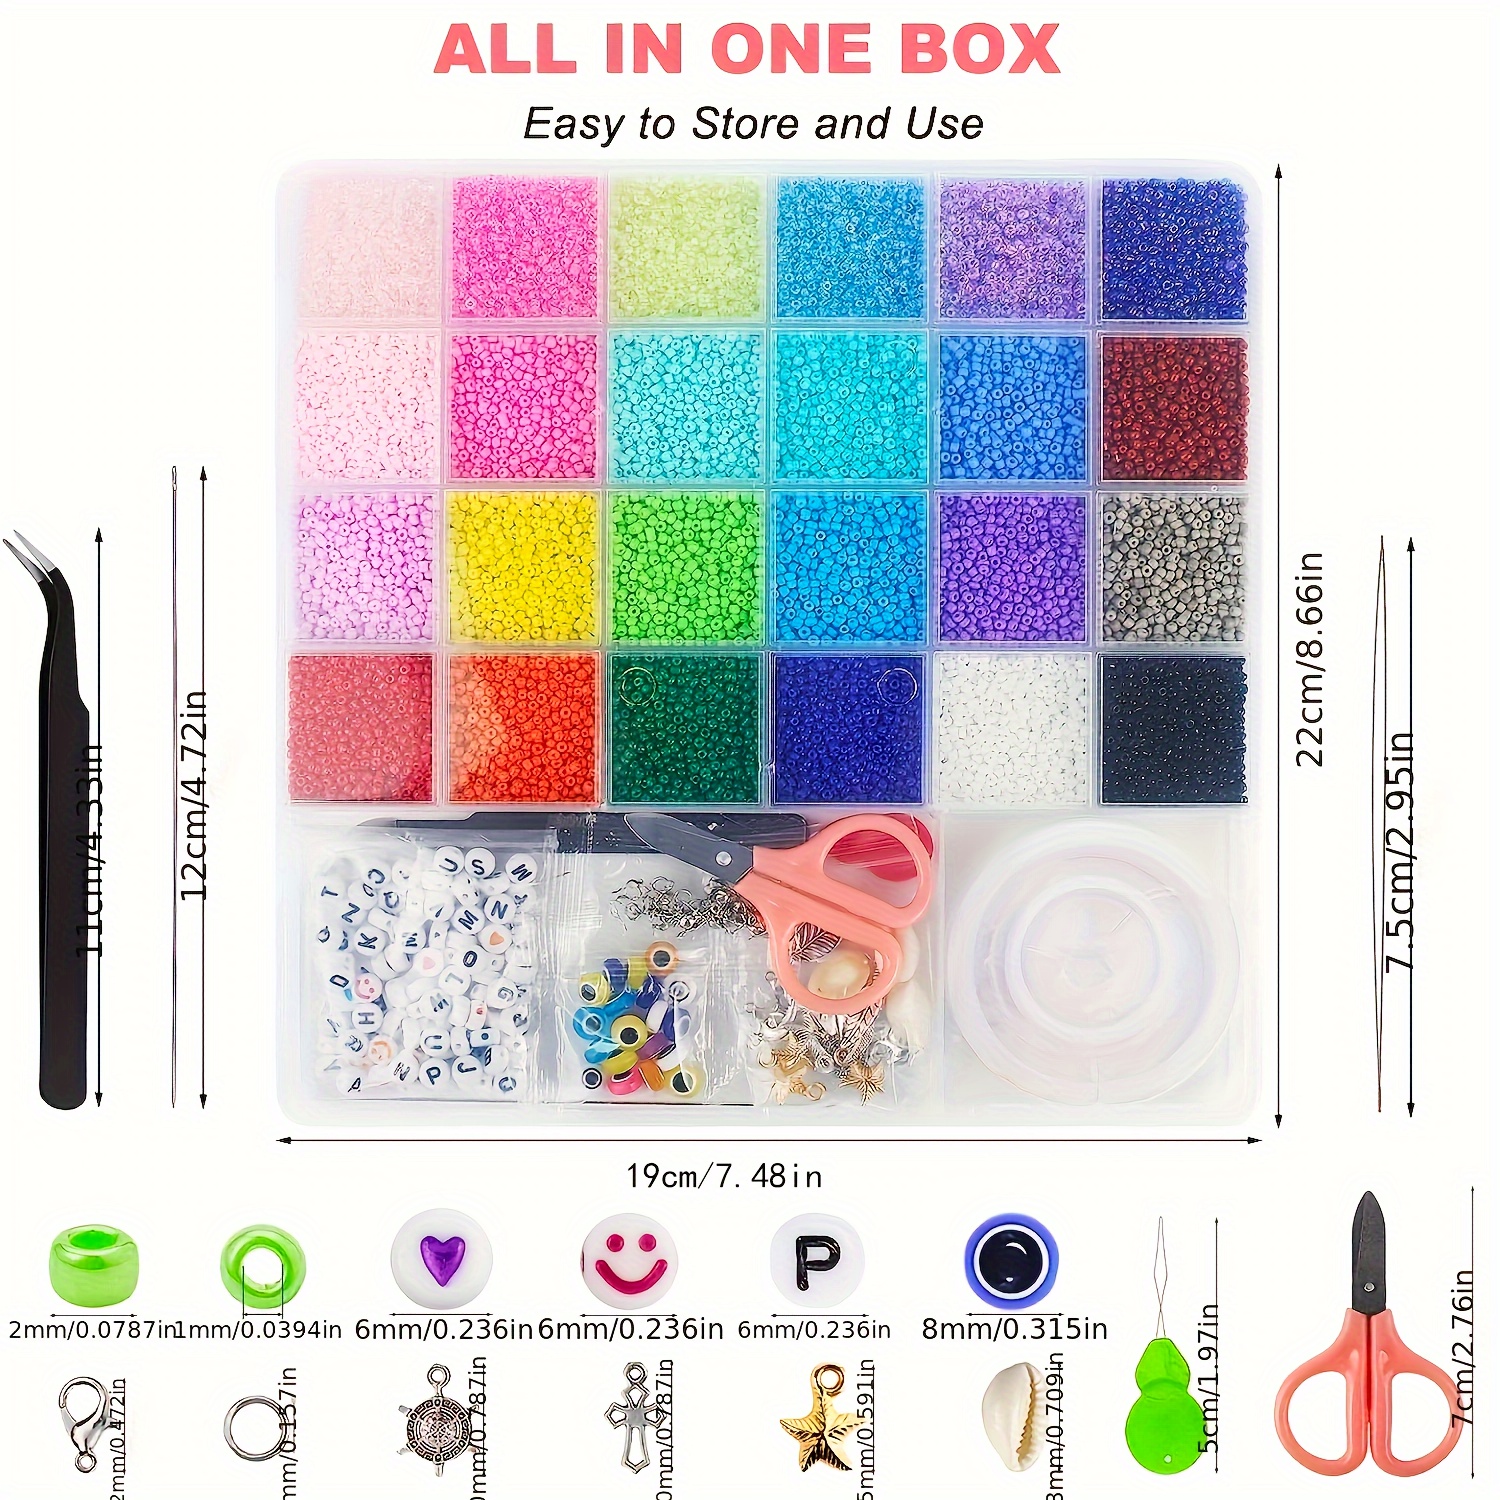 MMTX Mini Glass Beads 3 mm, 10,000 Pieces Beads Set DIY Friendship